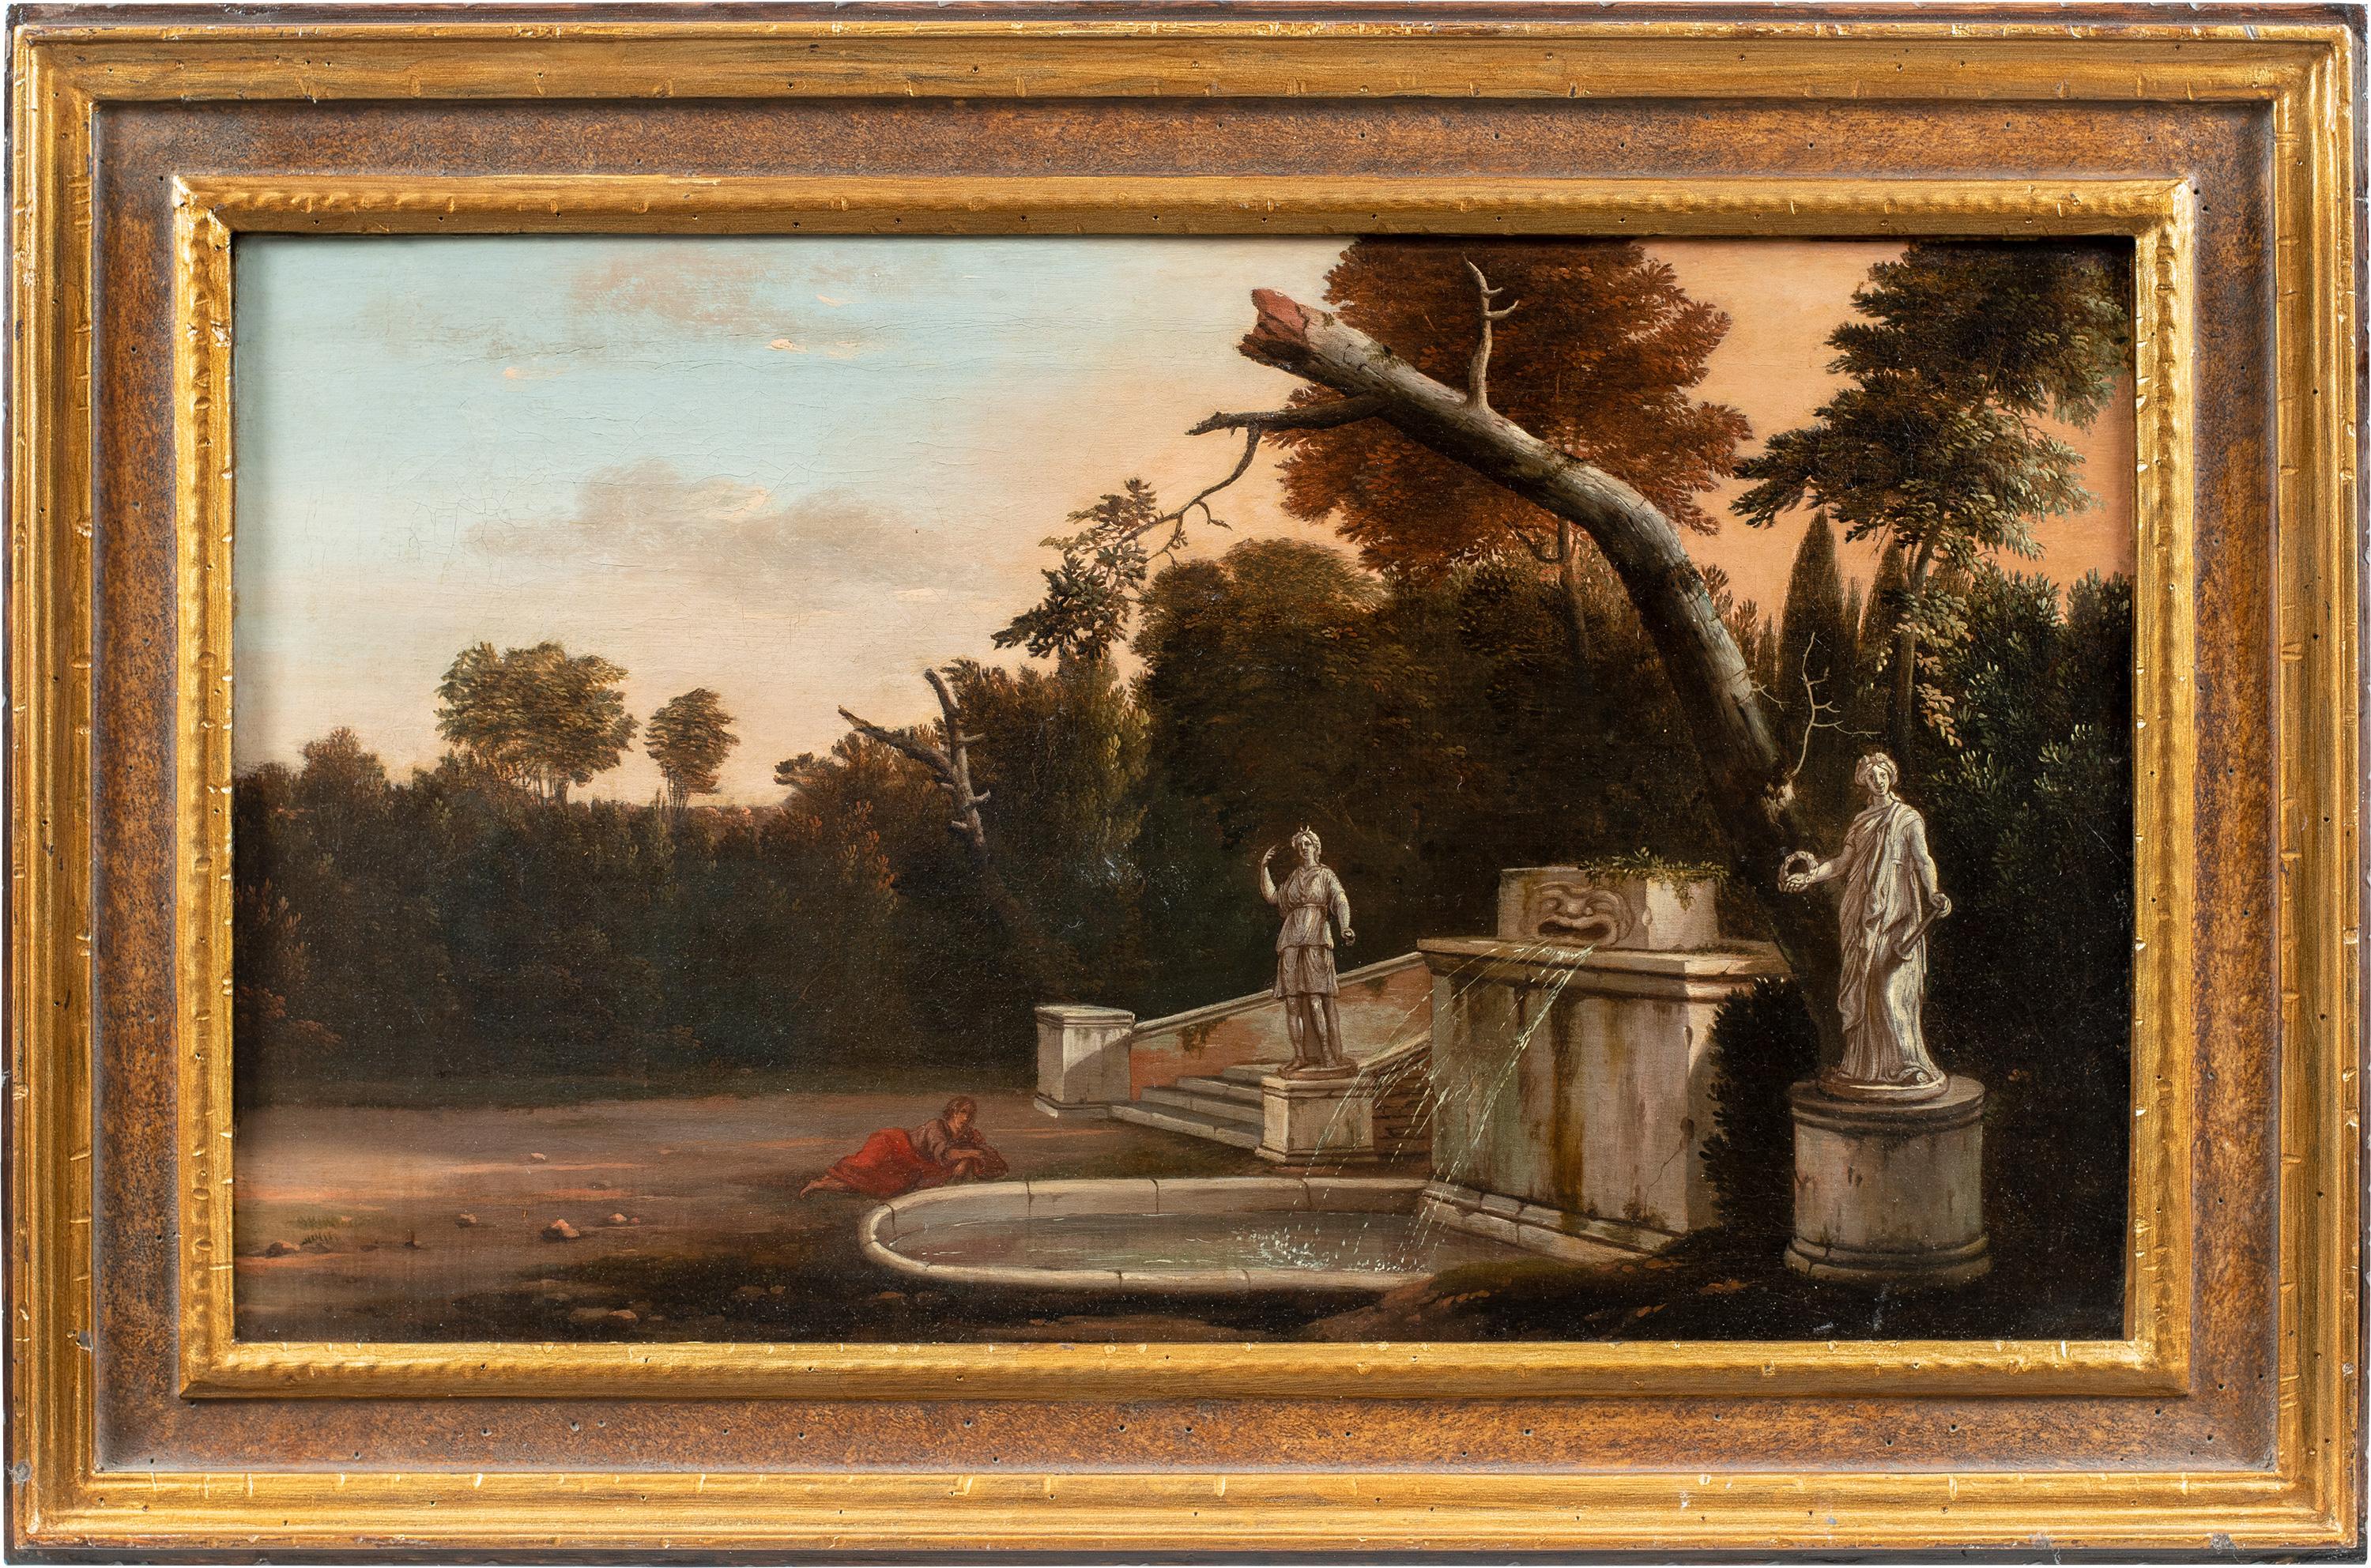 Jan Blom (Amsterdam 1622 - Amsterdam 1685) - Jardin de villa avec fontaine.

41 x 69 cm sans cadre, 56 x 84 cm avec cadre.

Peinture à l'huile ancienne sur toile, dans un cadre en bois sculpté.

- Le tableau est accompagné d'une fiche critique du